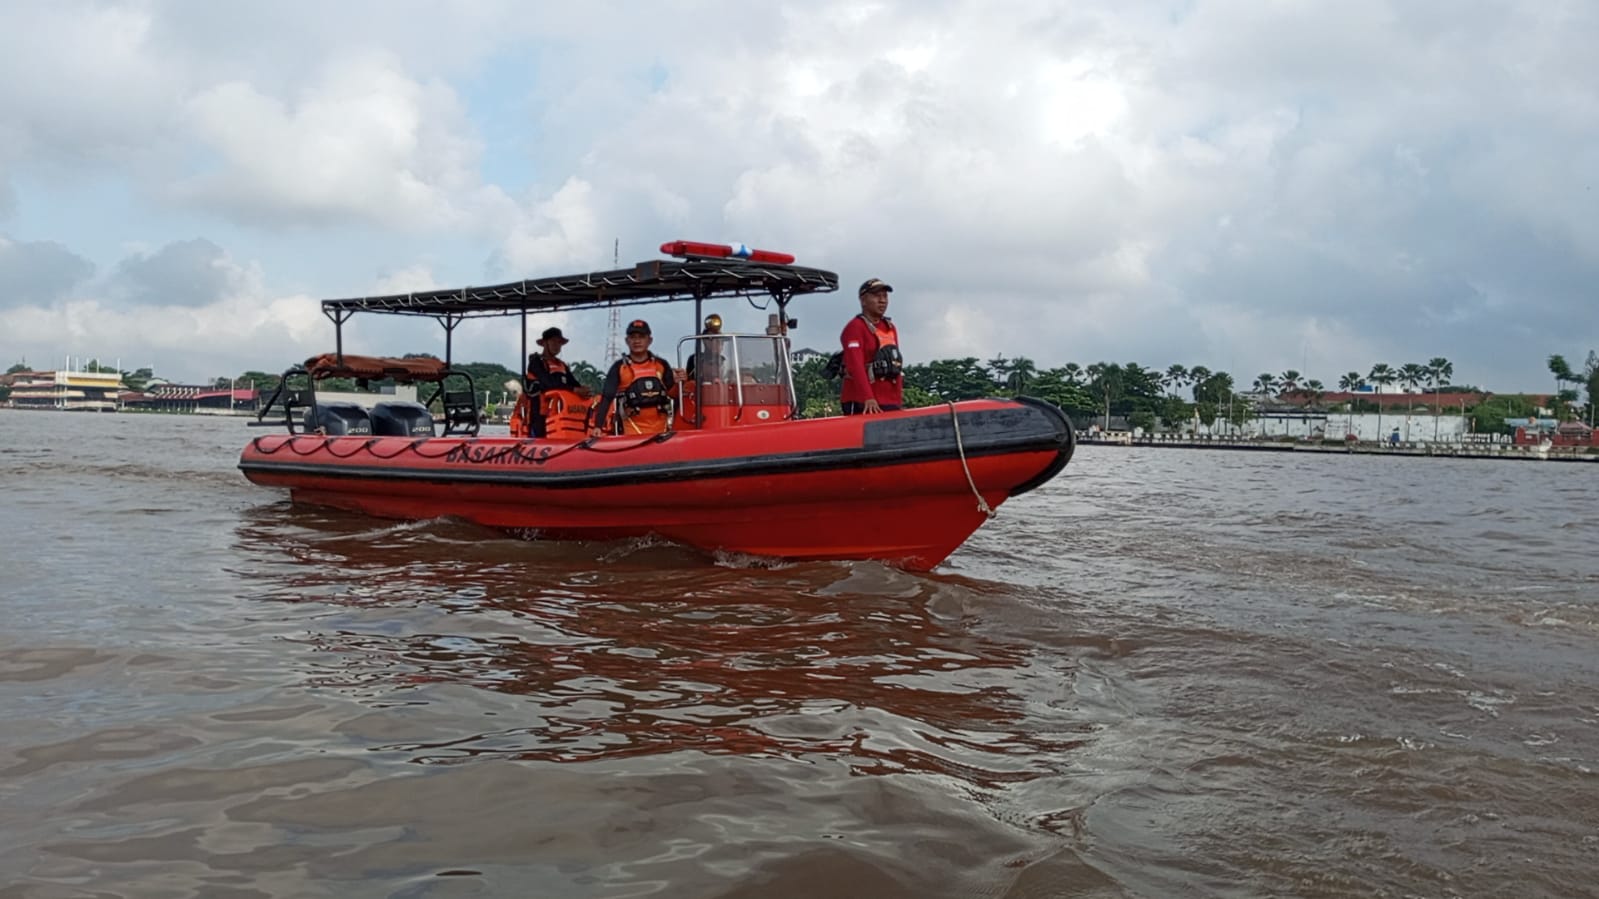 Basarnas Palembang Cari Korban Jukung Terbakar, 2 Tim Rescue Sisir Sungai Musi